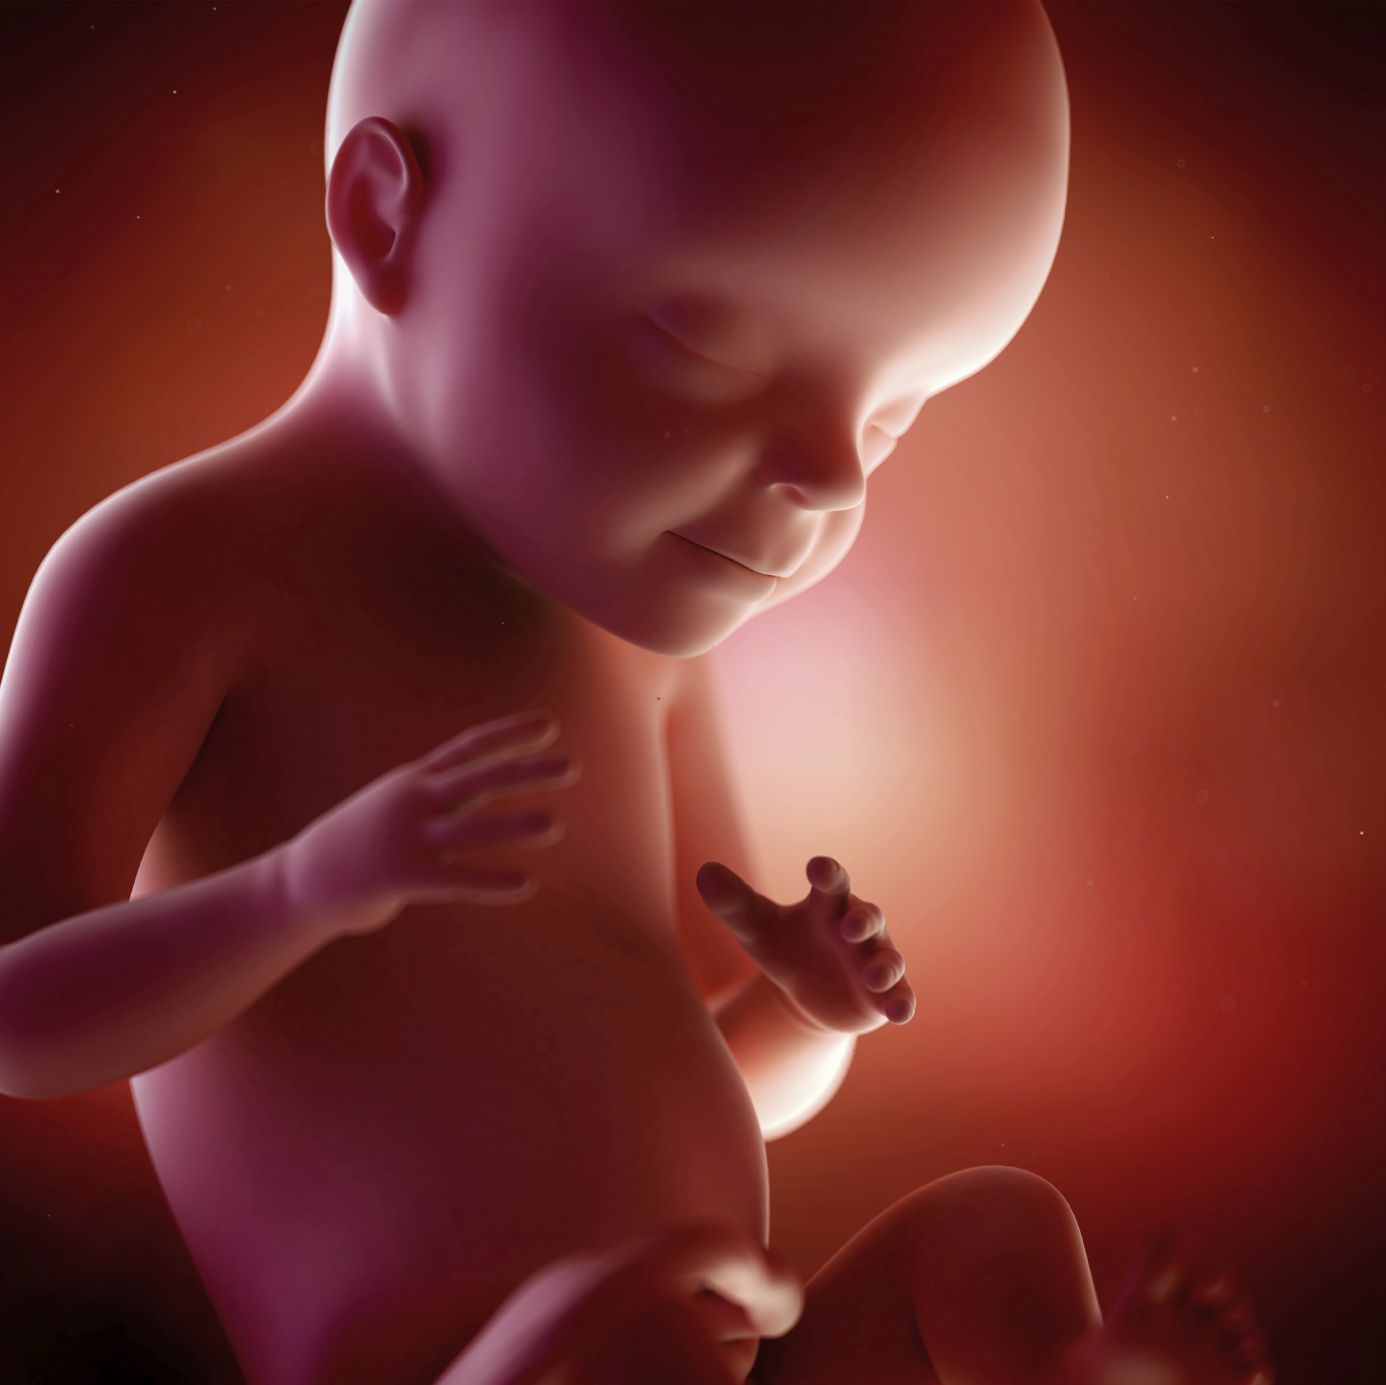 fetus 28 weeks